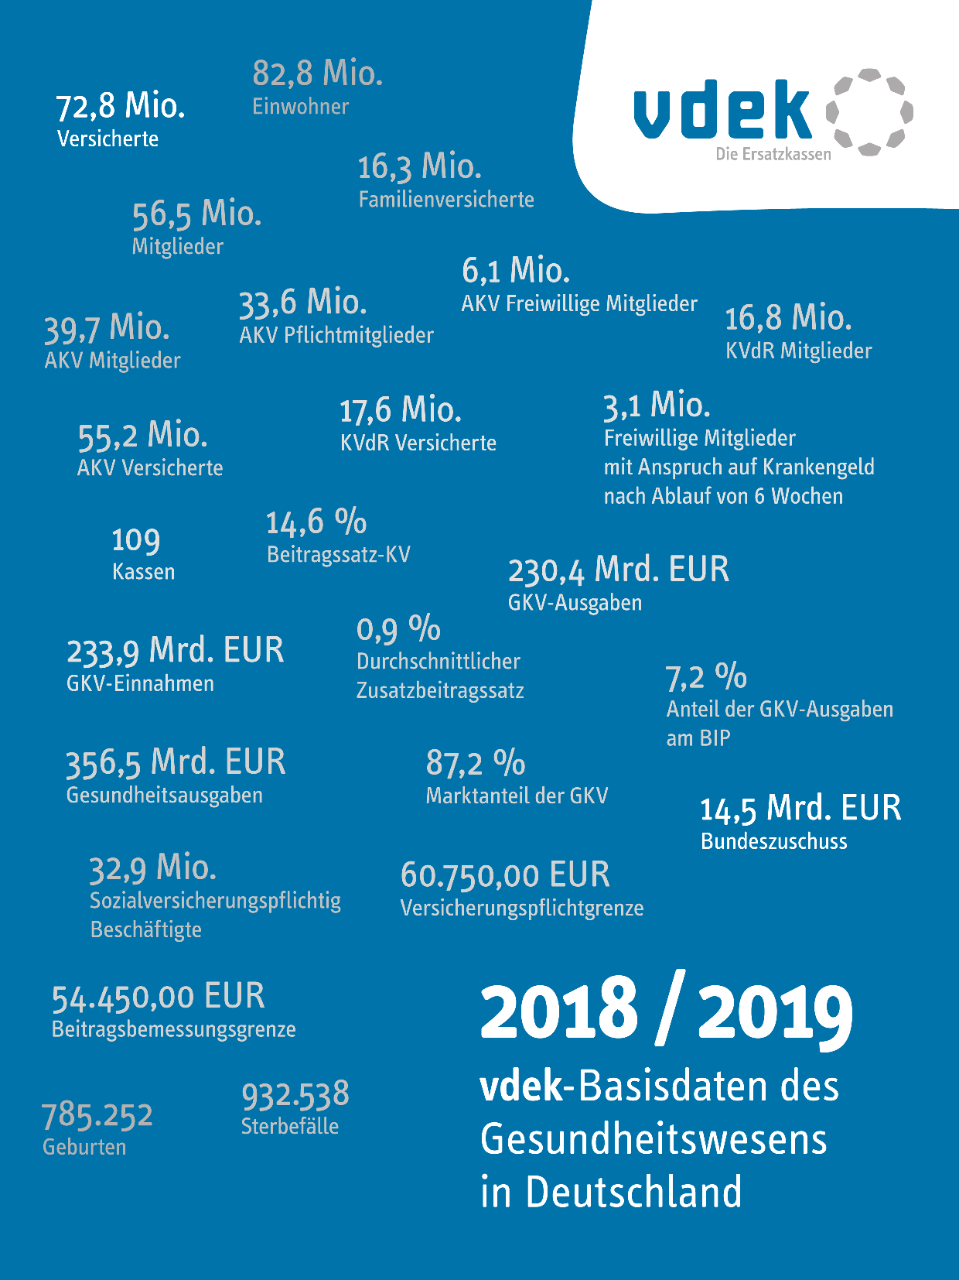 vdek-Basisdaten des Gesundheitswesens in Deutschland 2018-2019